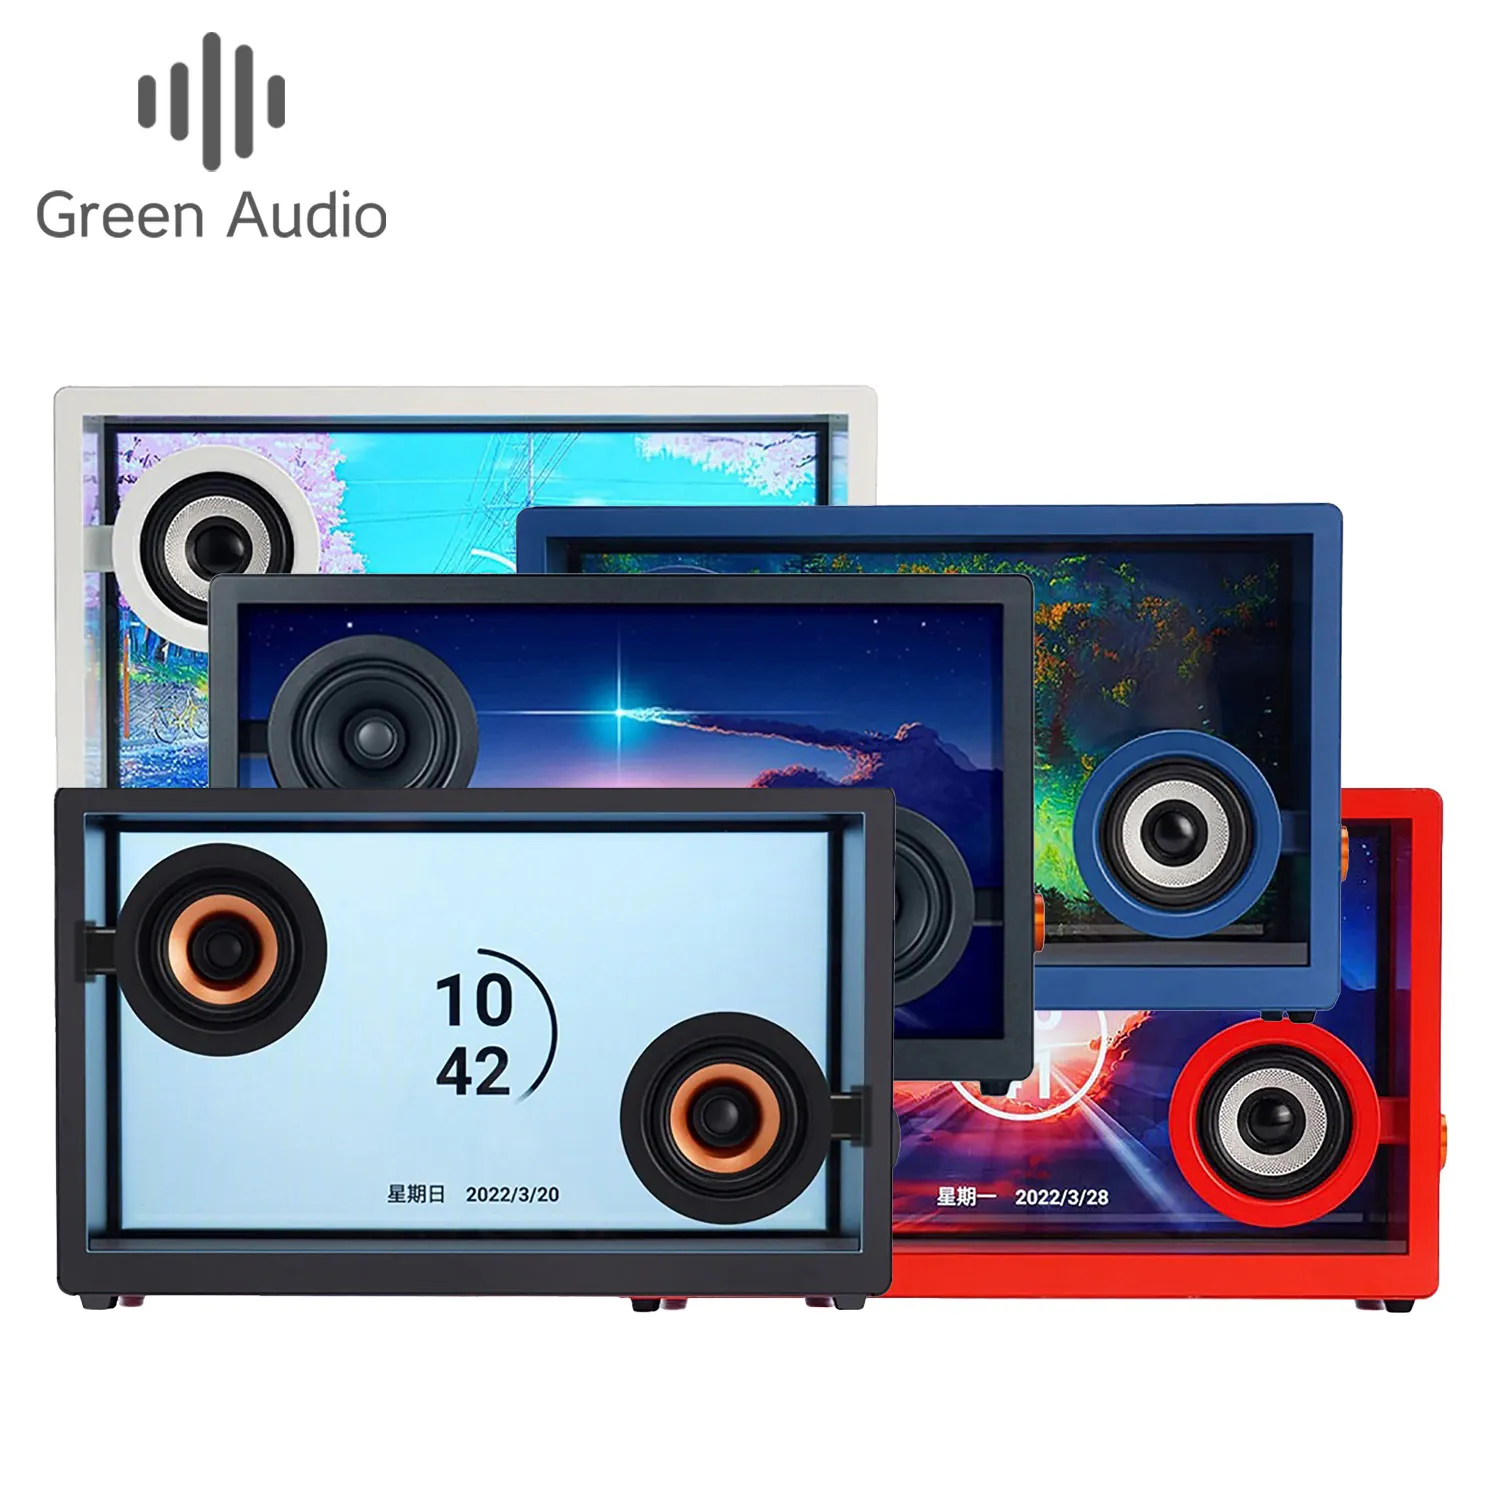 GAS-10TK yeni yüzen şarkı sözleri ekran hoparlörler ses sistemi ses ev sineması sistemleri için profesyonel müzik